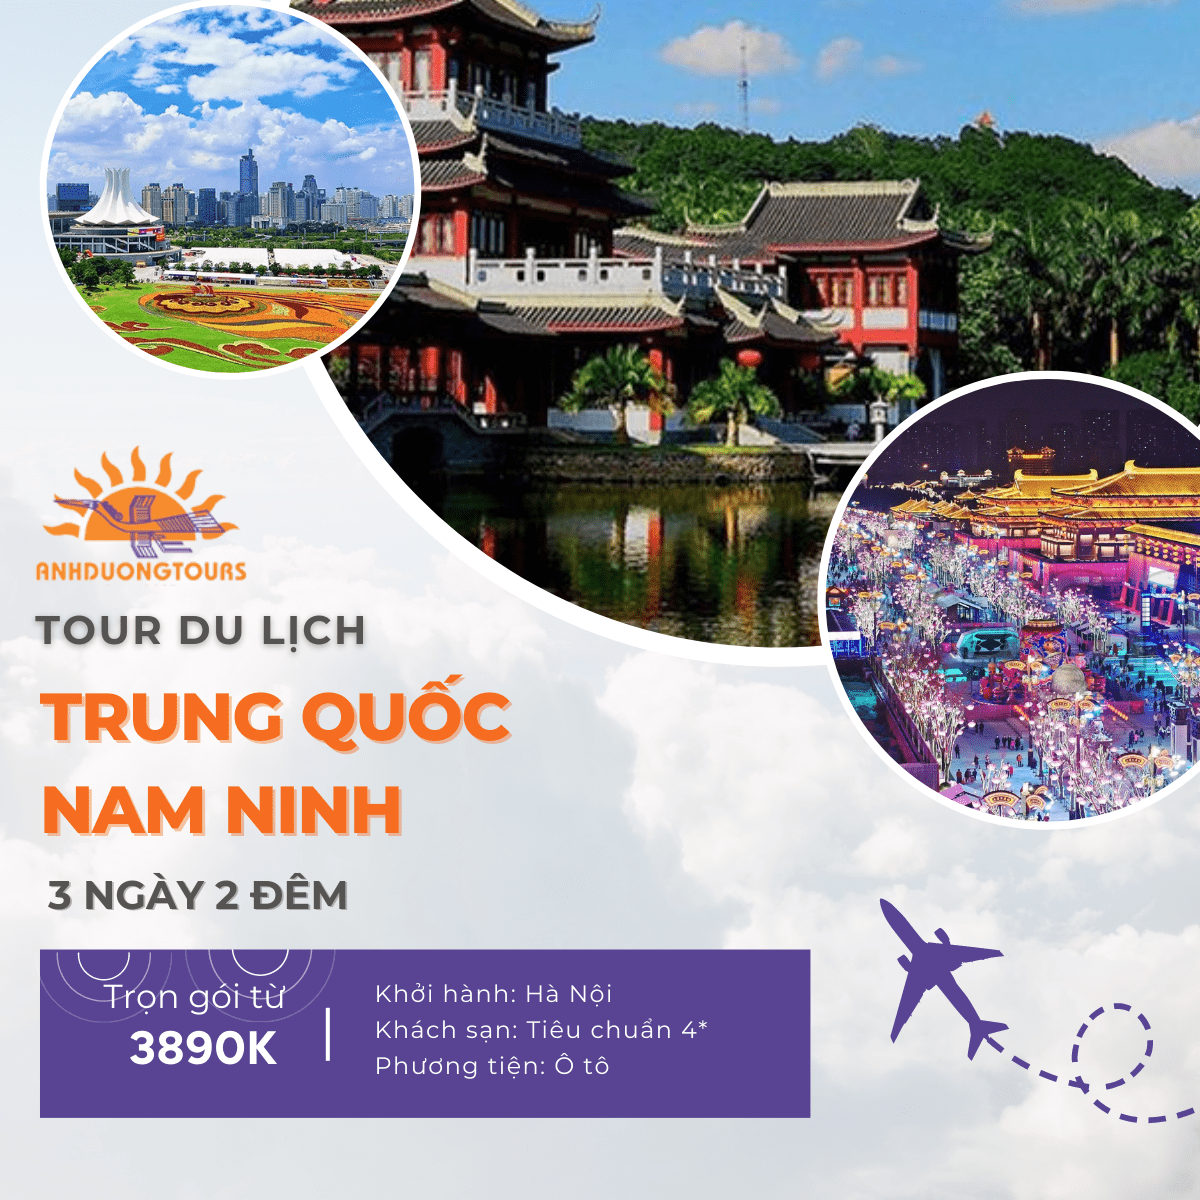 Tour Du Lịch Trung Quốc Nam Ninh 3 ngày 2 đêm từ Hà Nội Ánh Dương Tours